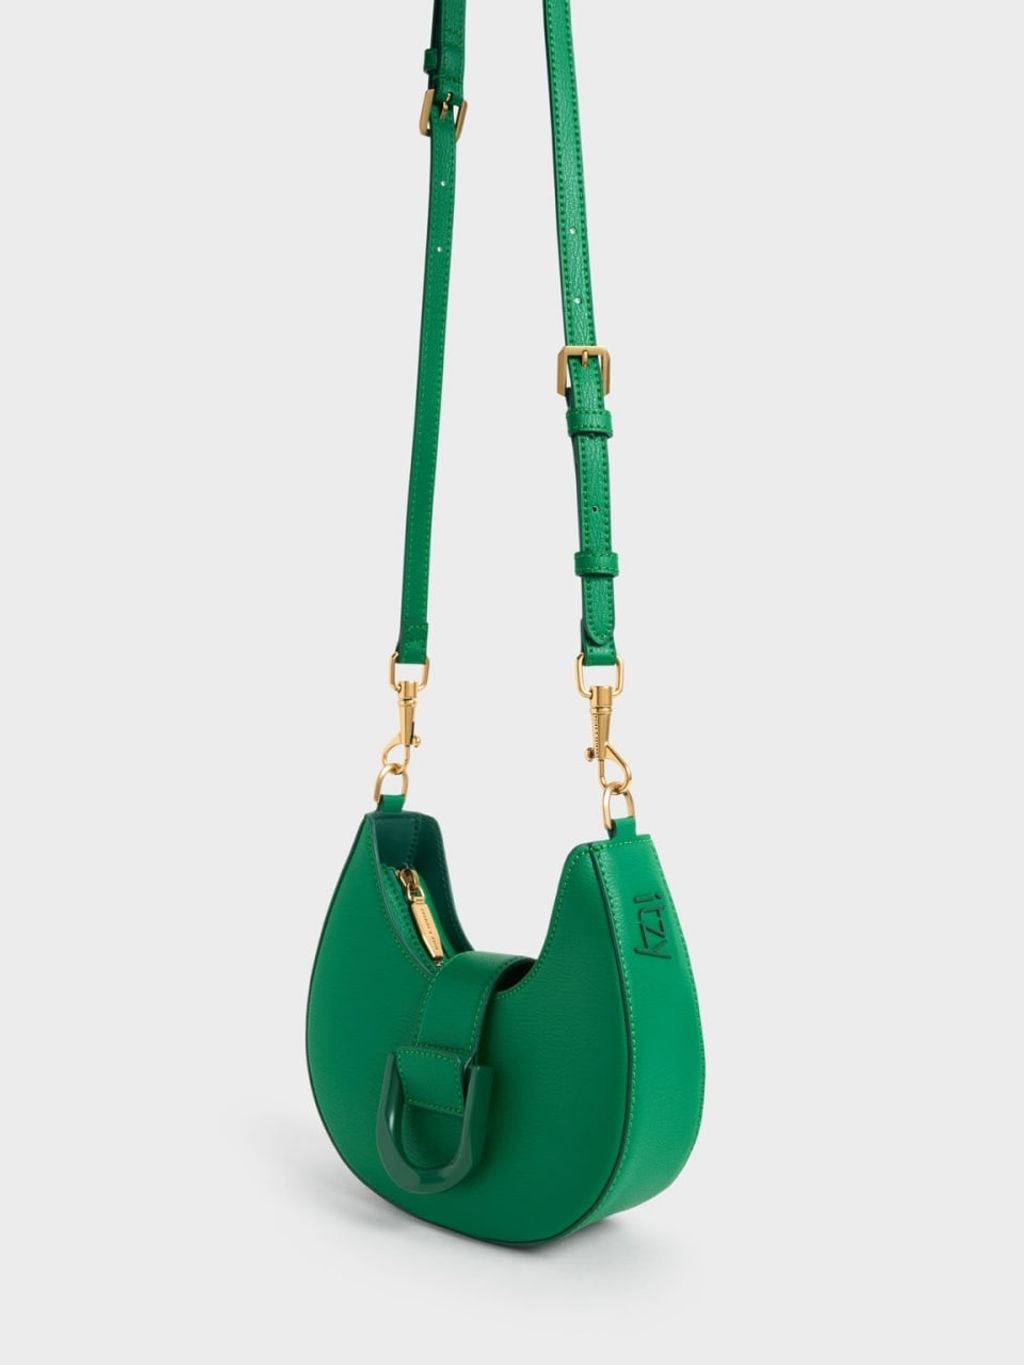 Dior Saddle Bag Mint Green Leather | 3D model